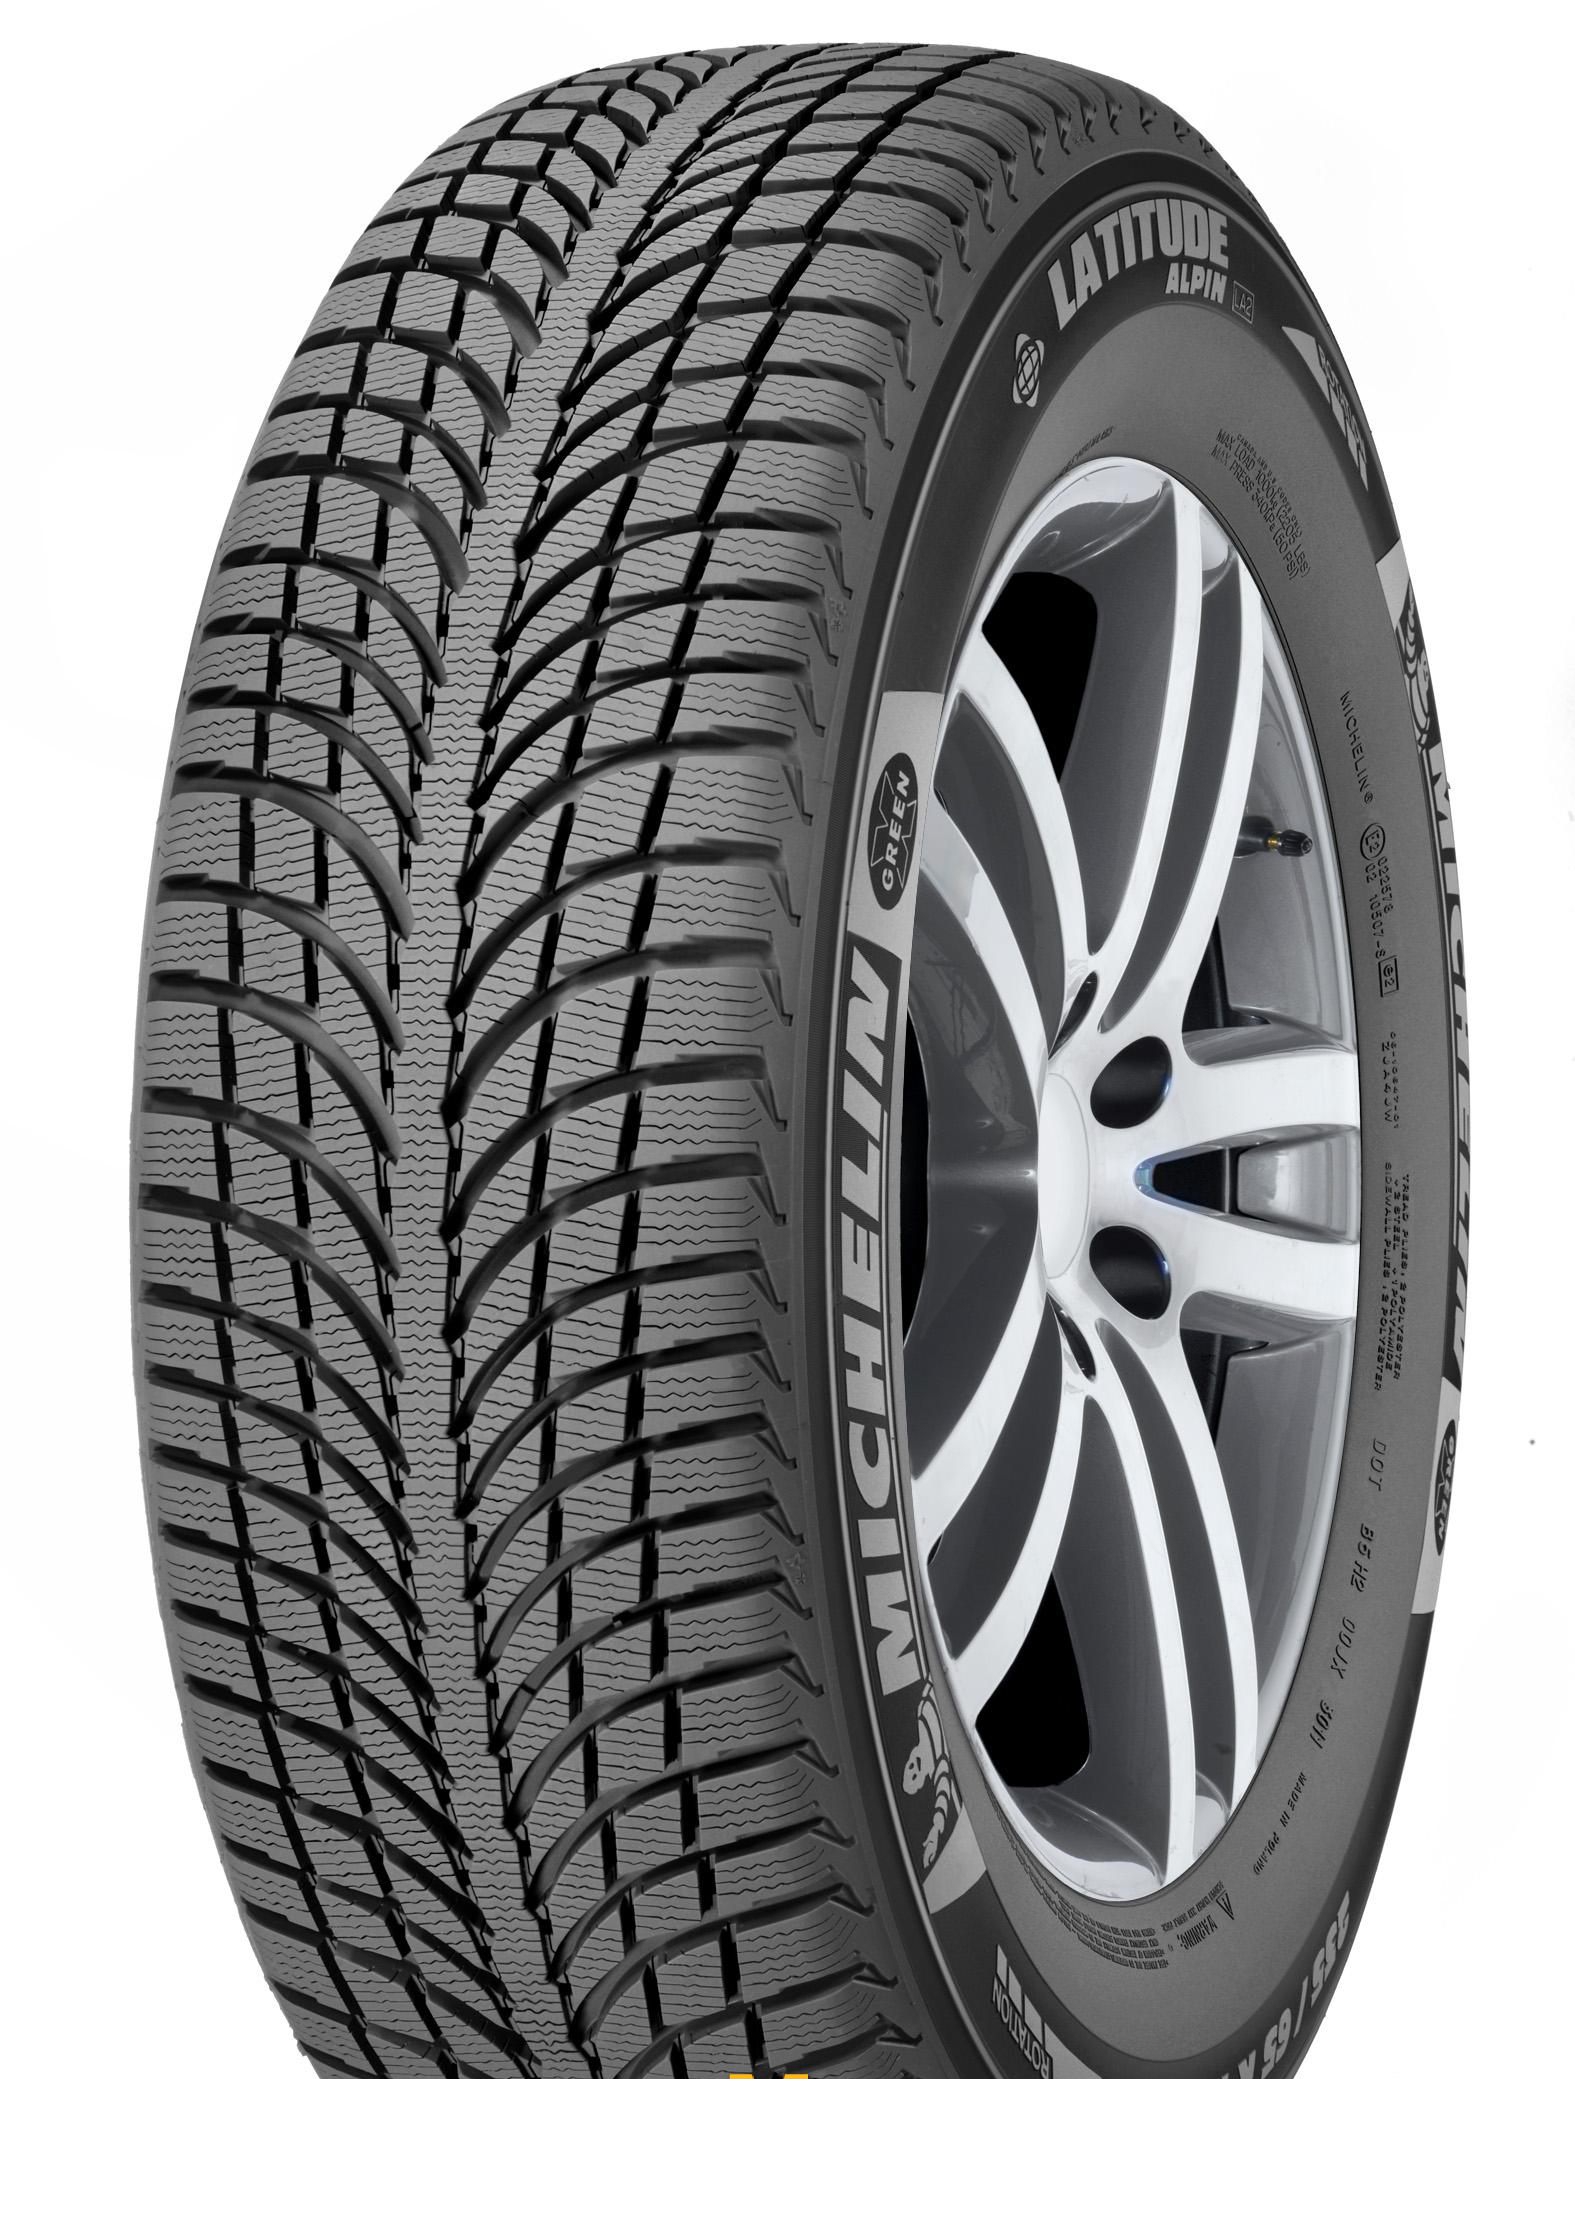 Tire Michelin Latitude Alpin 2 245/65R17 111H - picture, photo, image